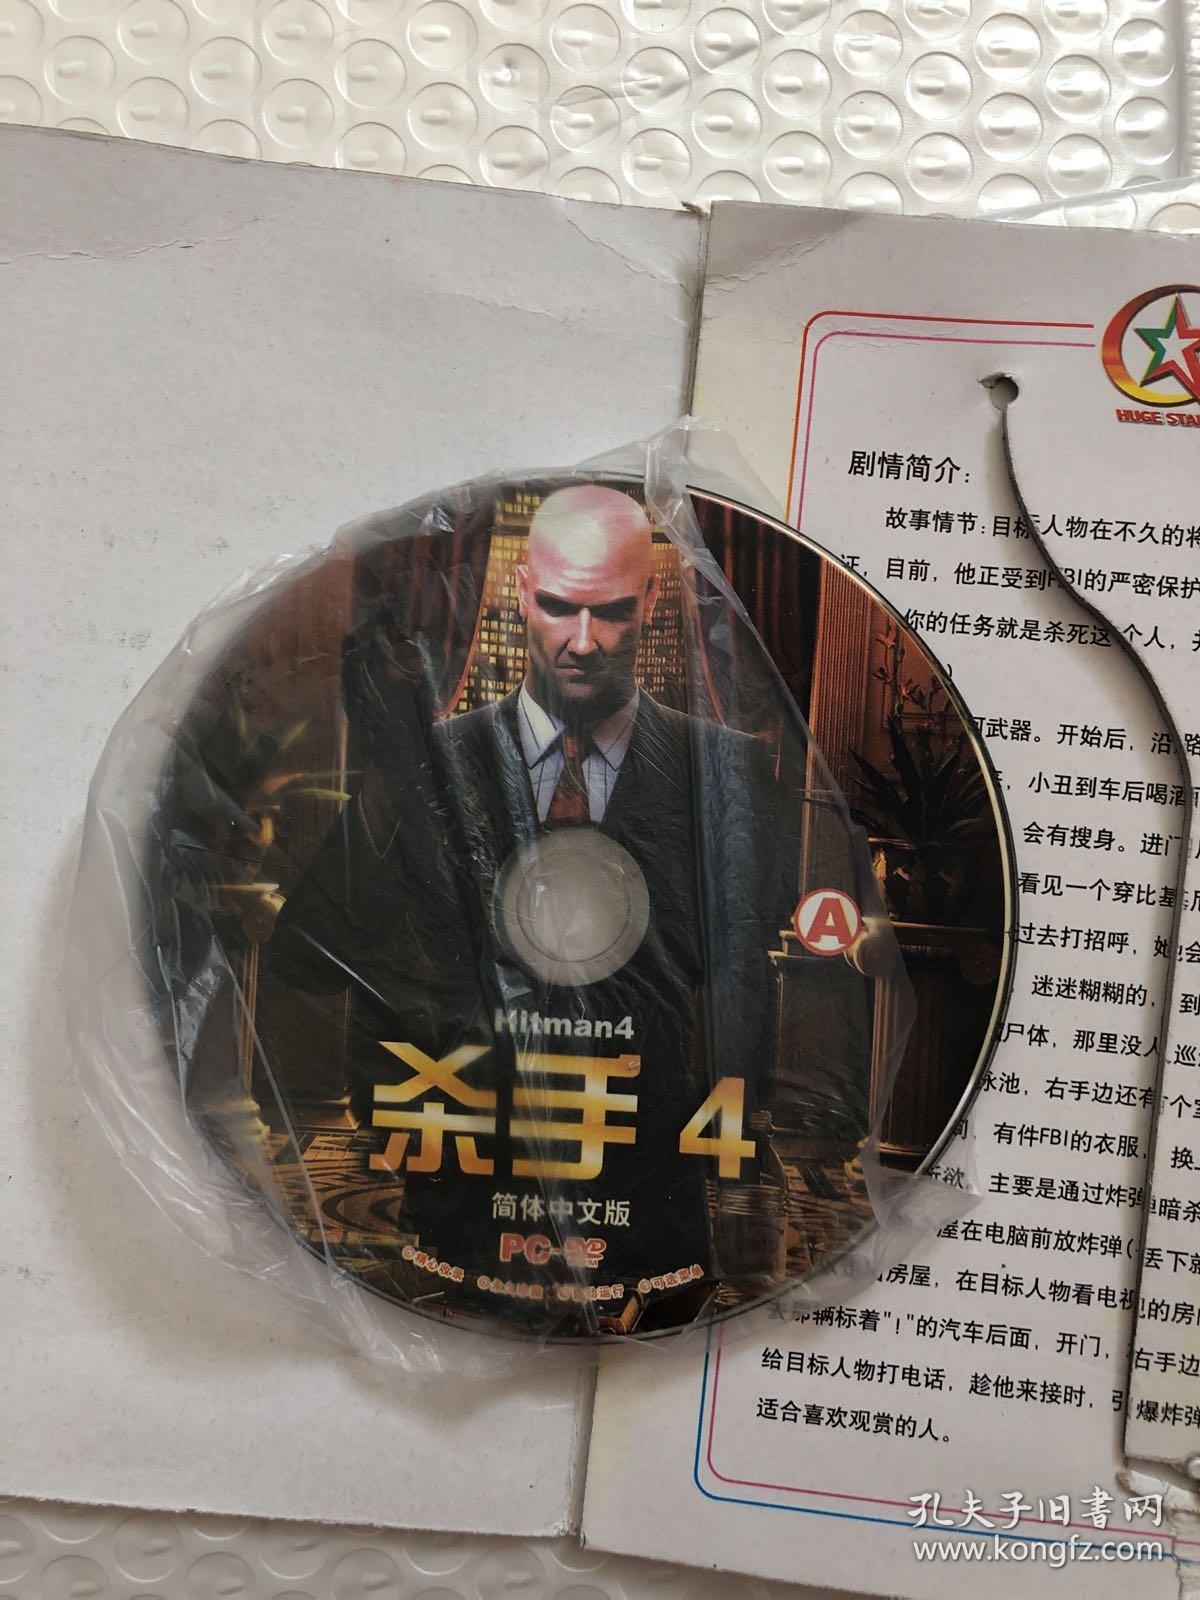 游戏光盘 杀手4 幻影 简体中文版 两张DVD光盘